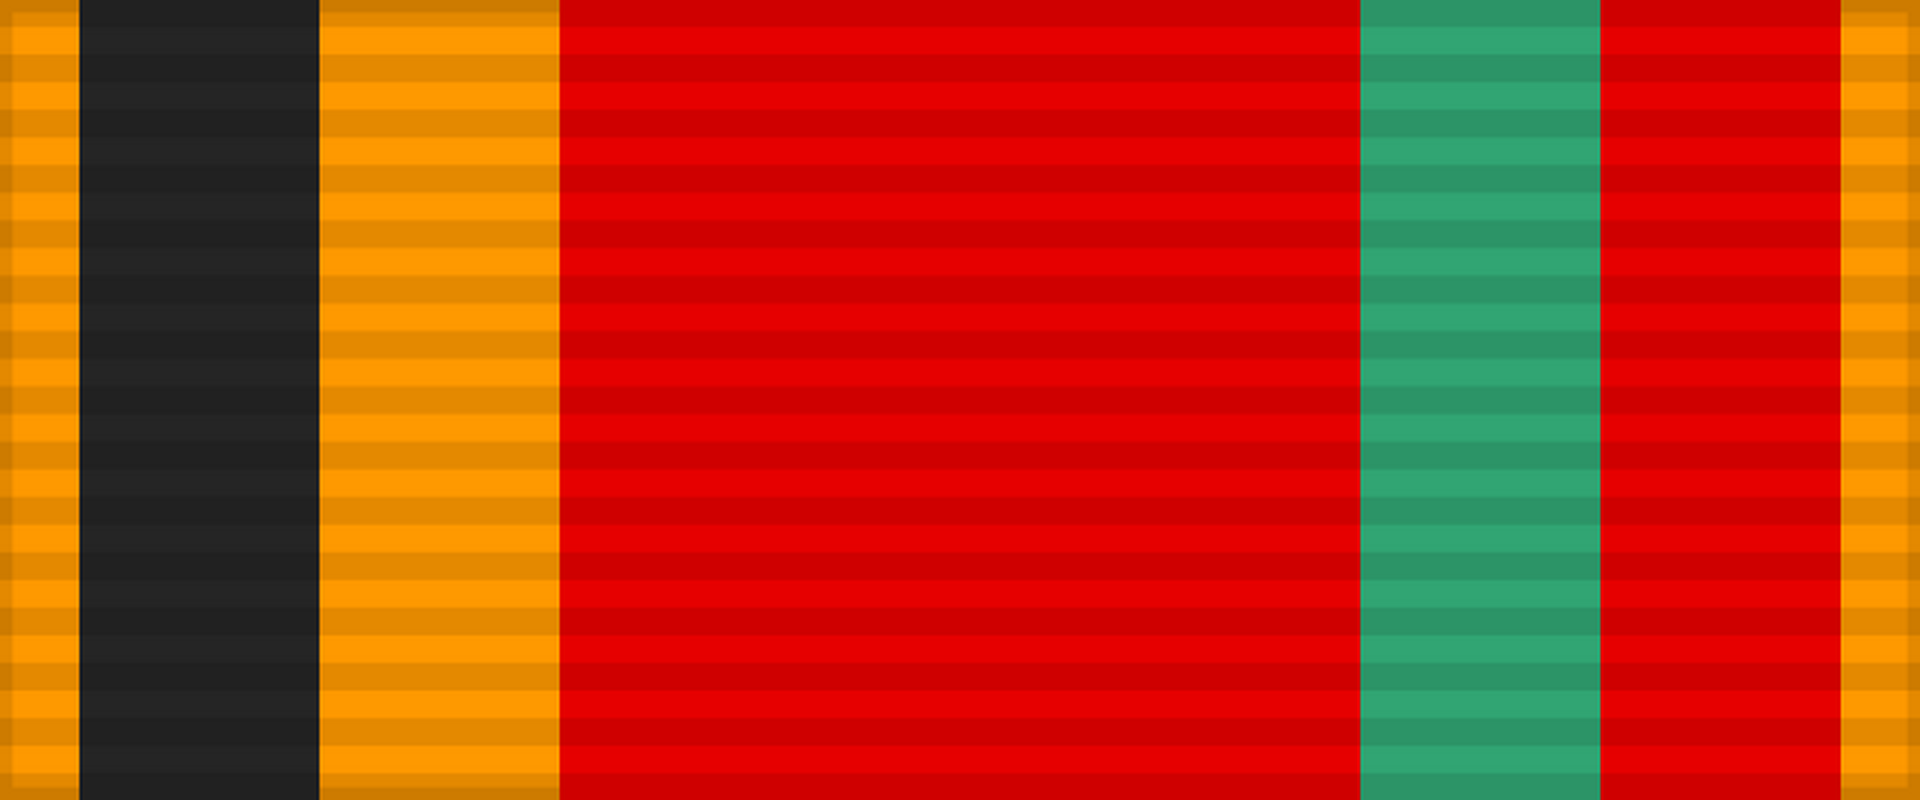 Лента медали «Тридцать лет Победы в Великой Отечественной войне 1941—1945 гг.». СССР.